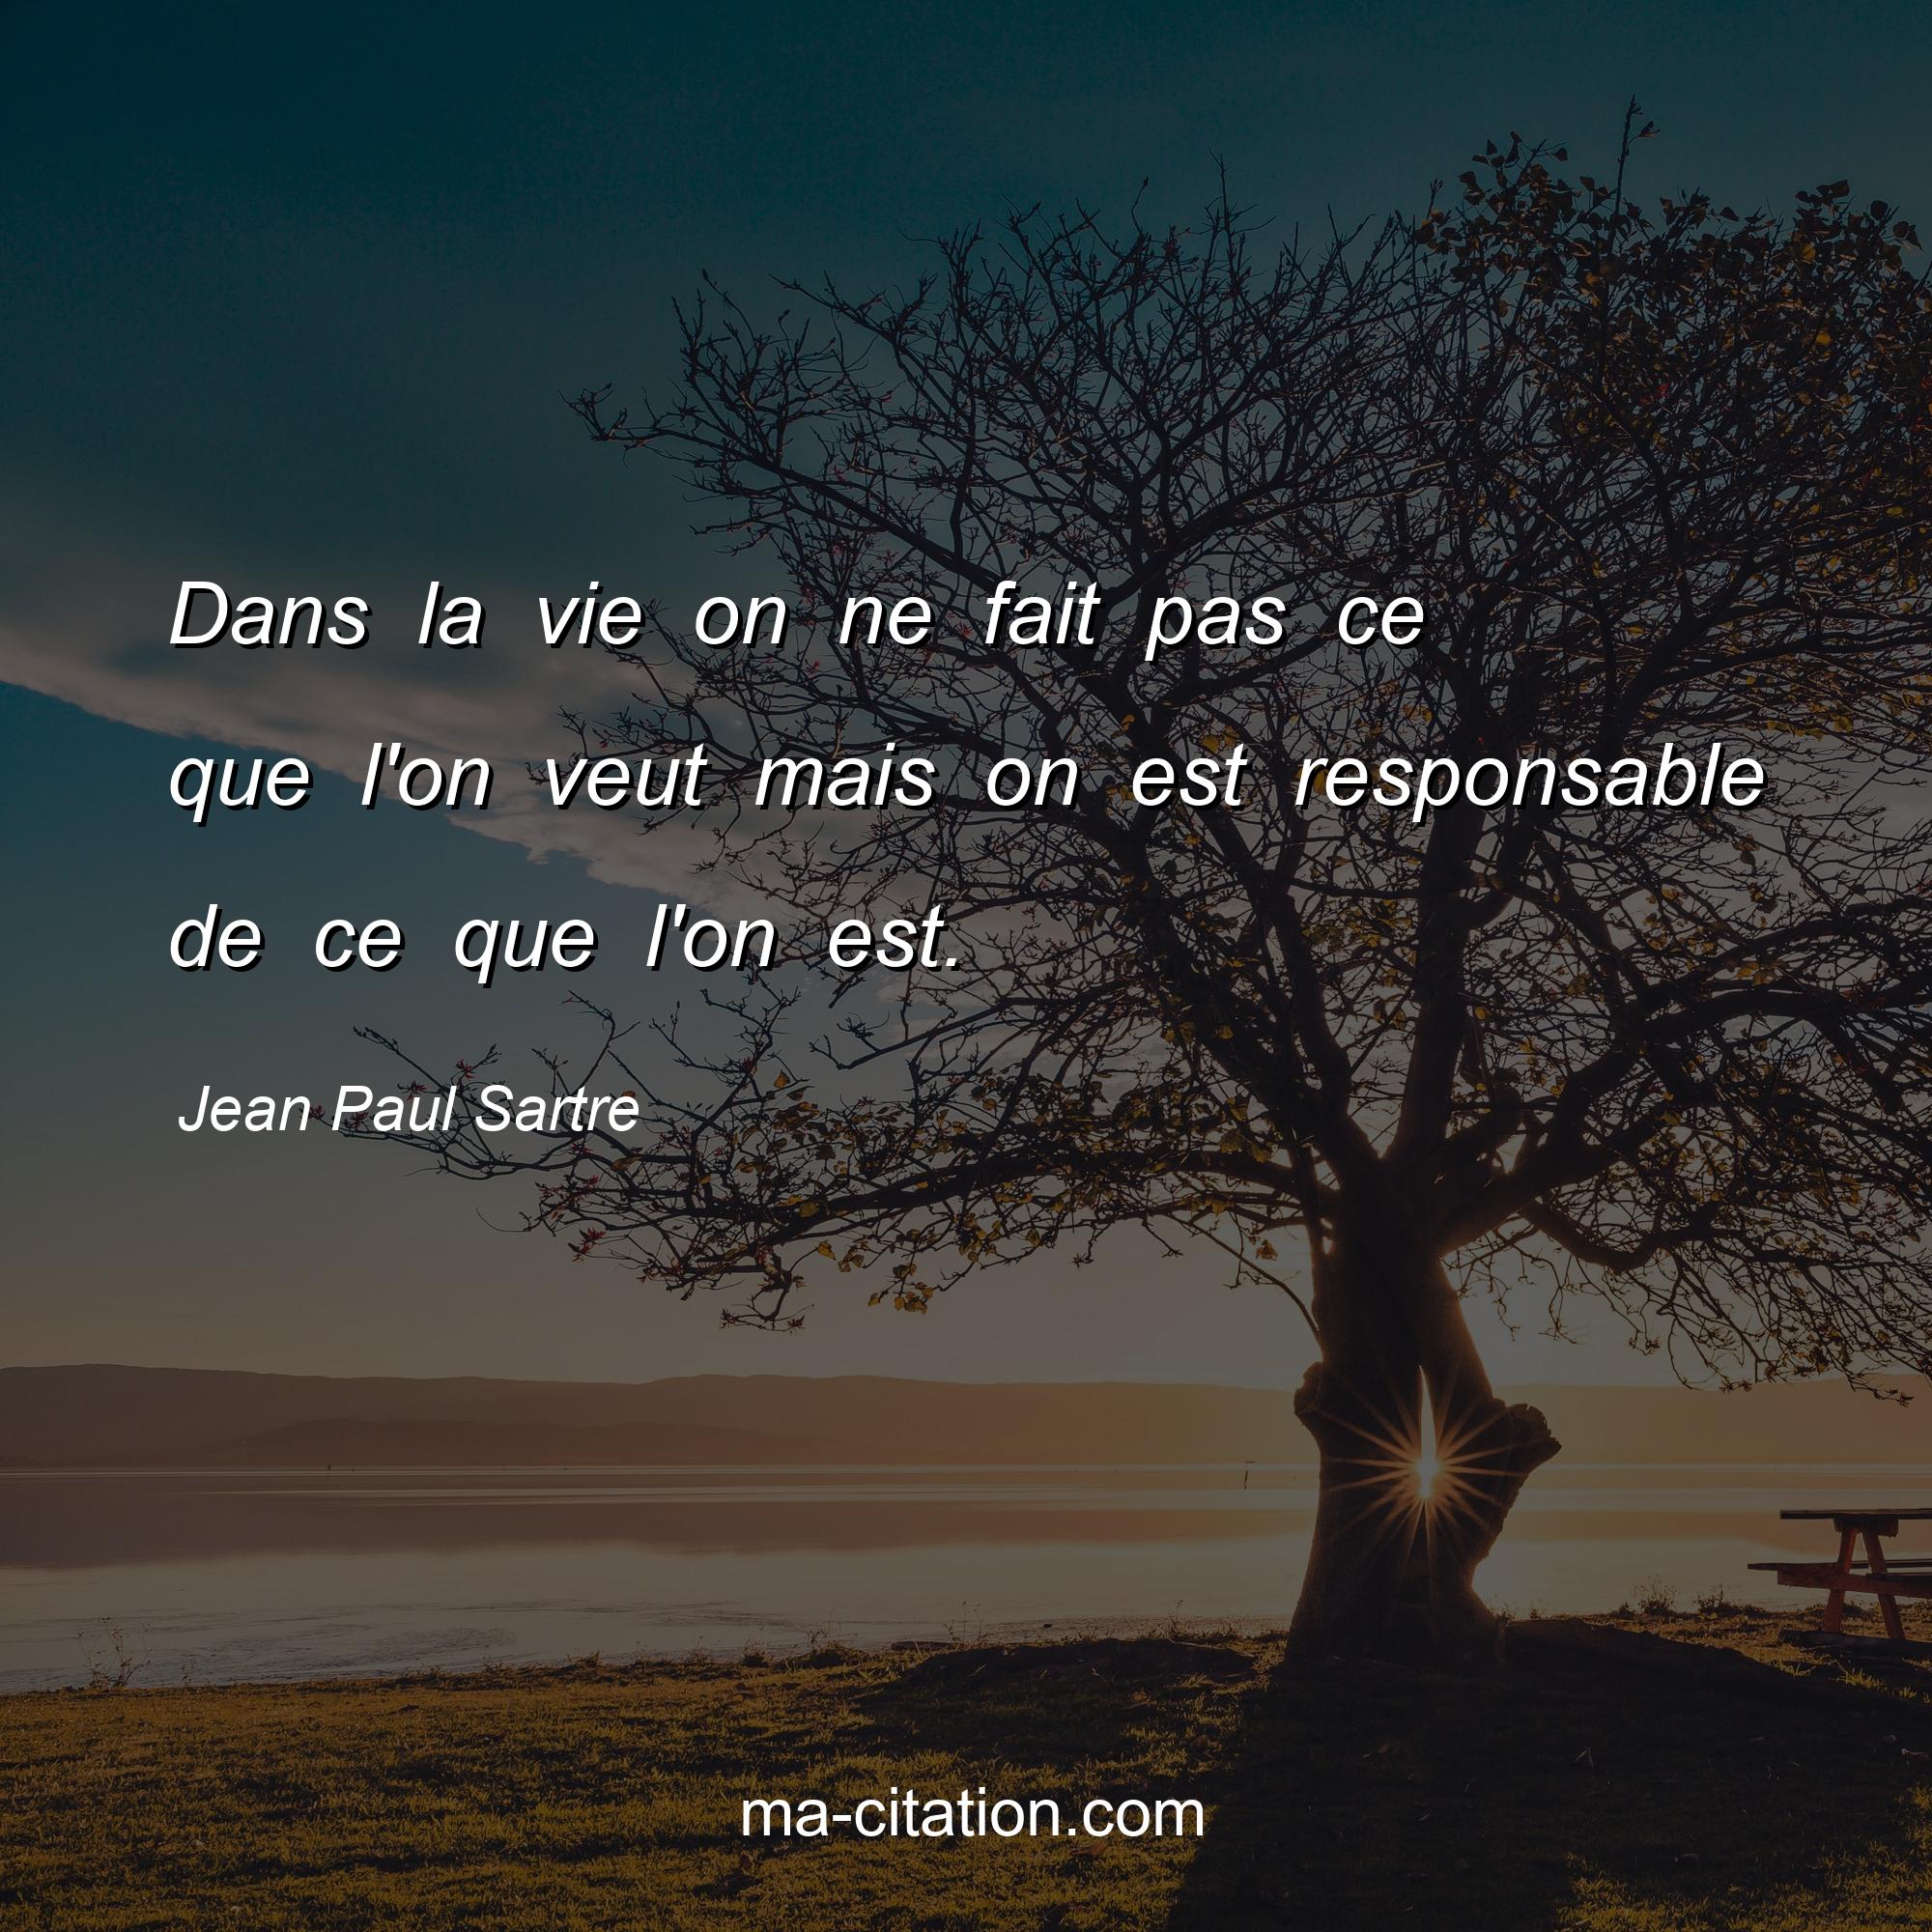 Jean Paul Sartre : Dans la vie on ne fait pas ce que l'on veut mais on est responsable de ce que l'on est.